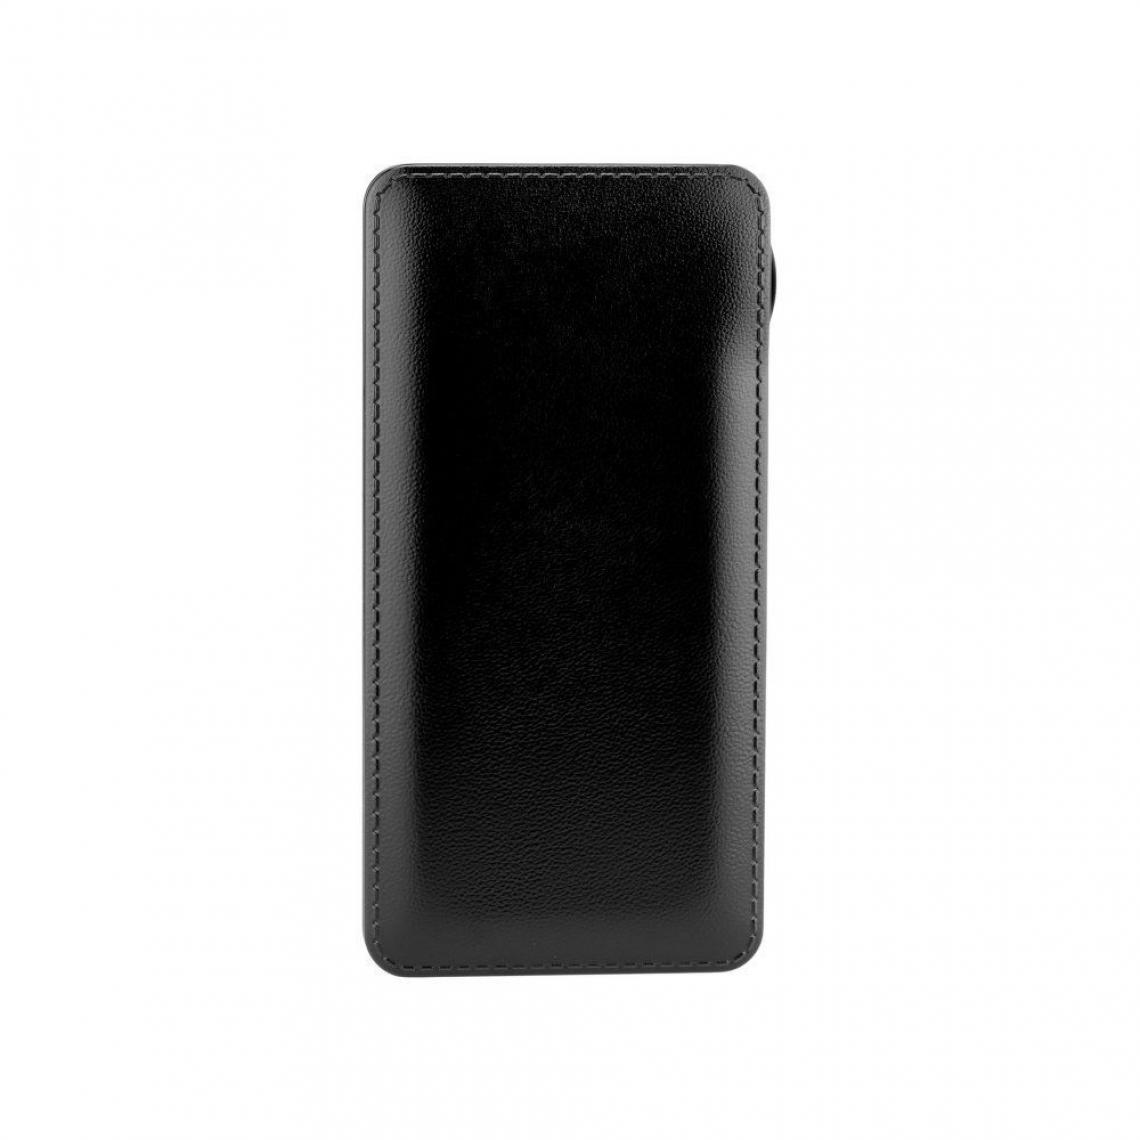 Ozzzo - Chargeur batterie externe 20000 mAh powerbank ozzzo noir pour Huawei Honor 10 - Autres accessoires smartphone